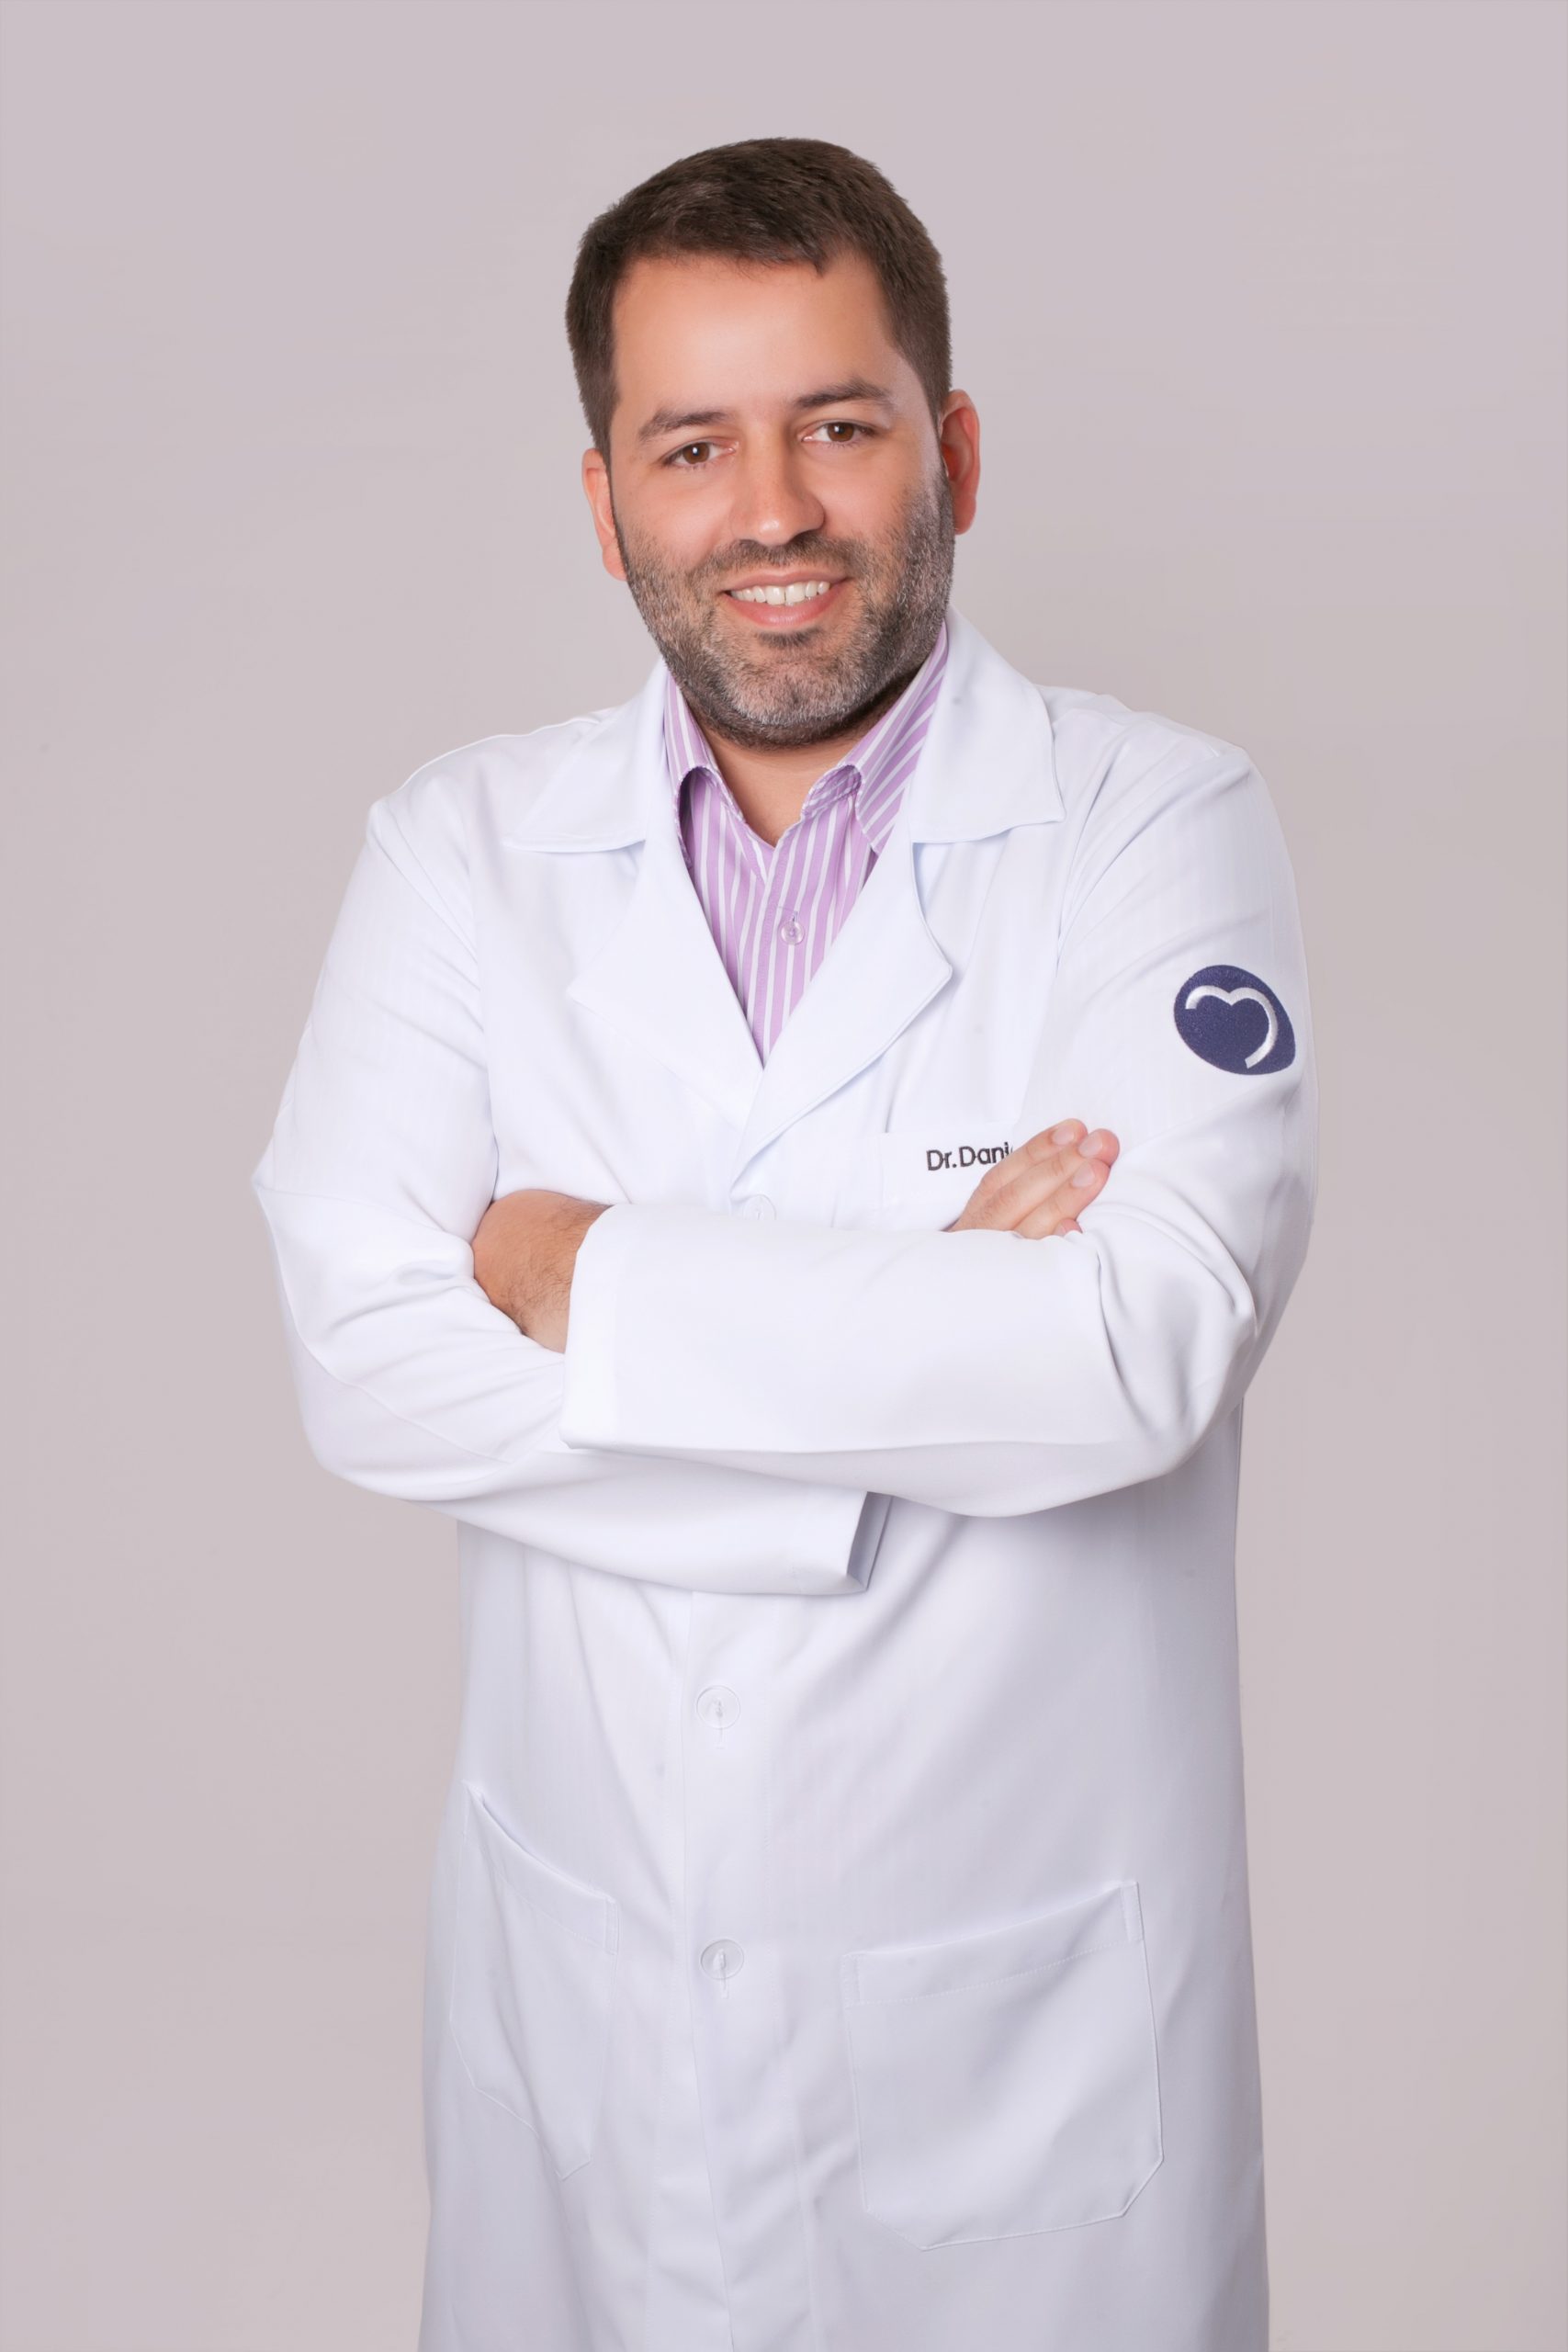 Dr. Daniel Mello